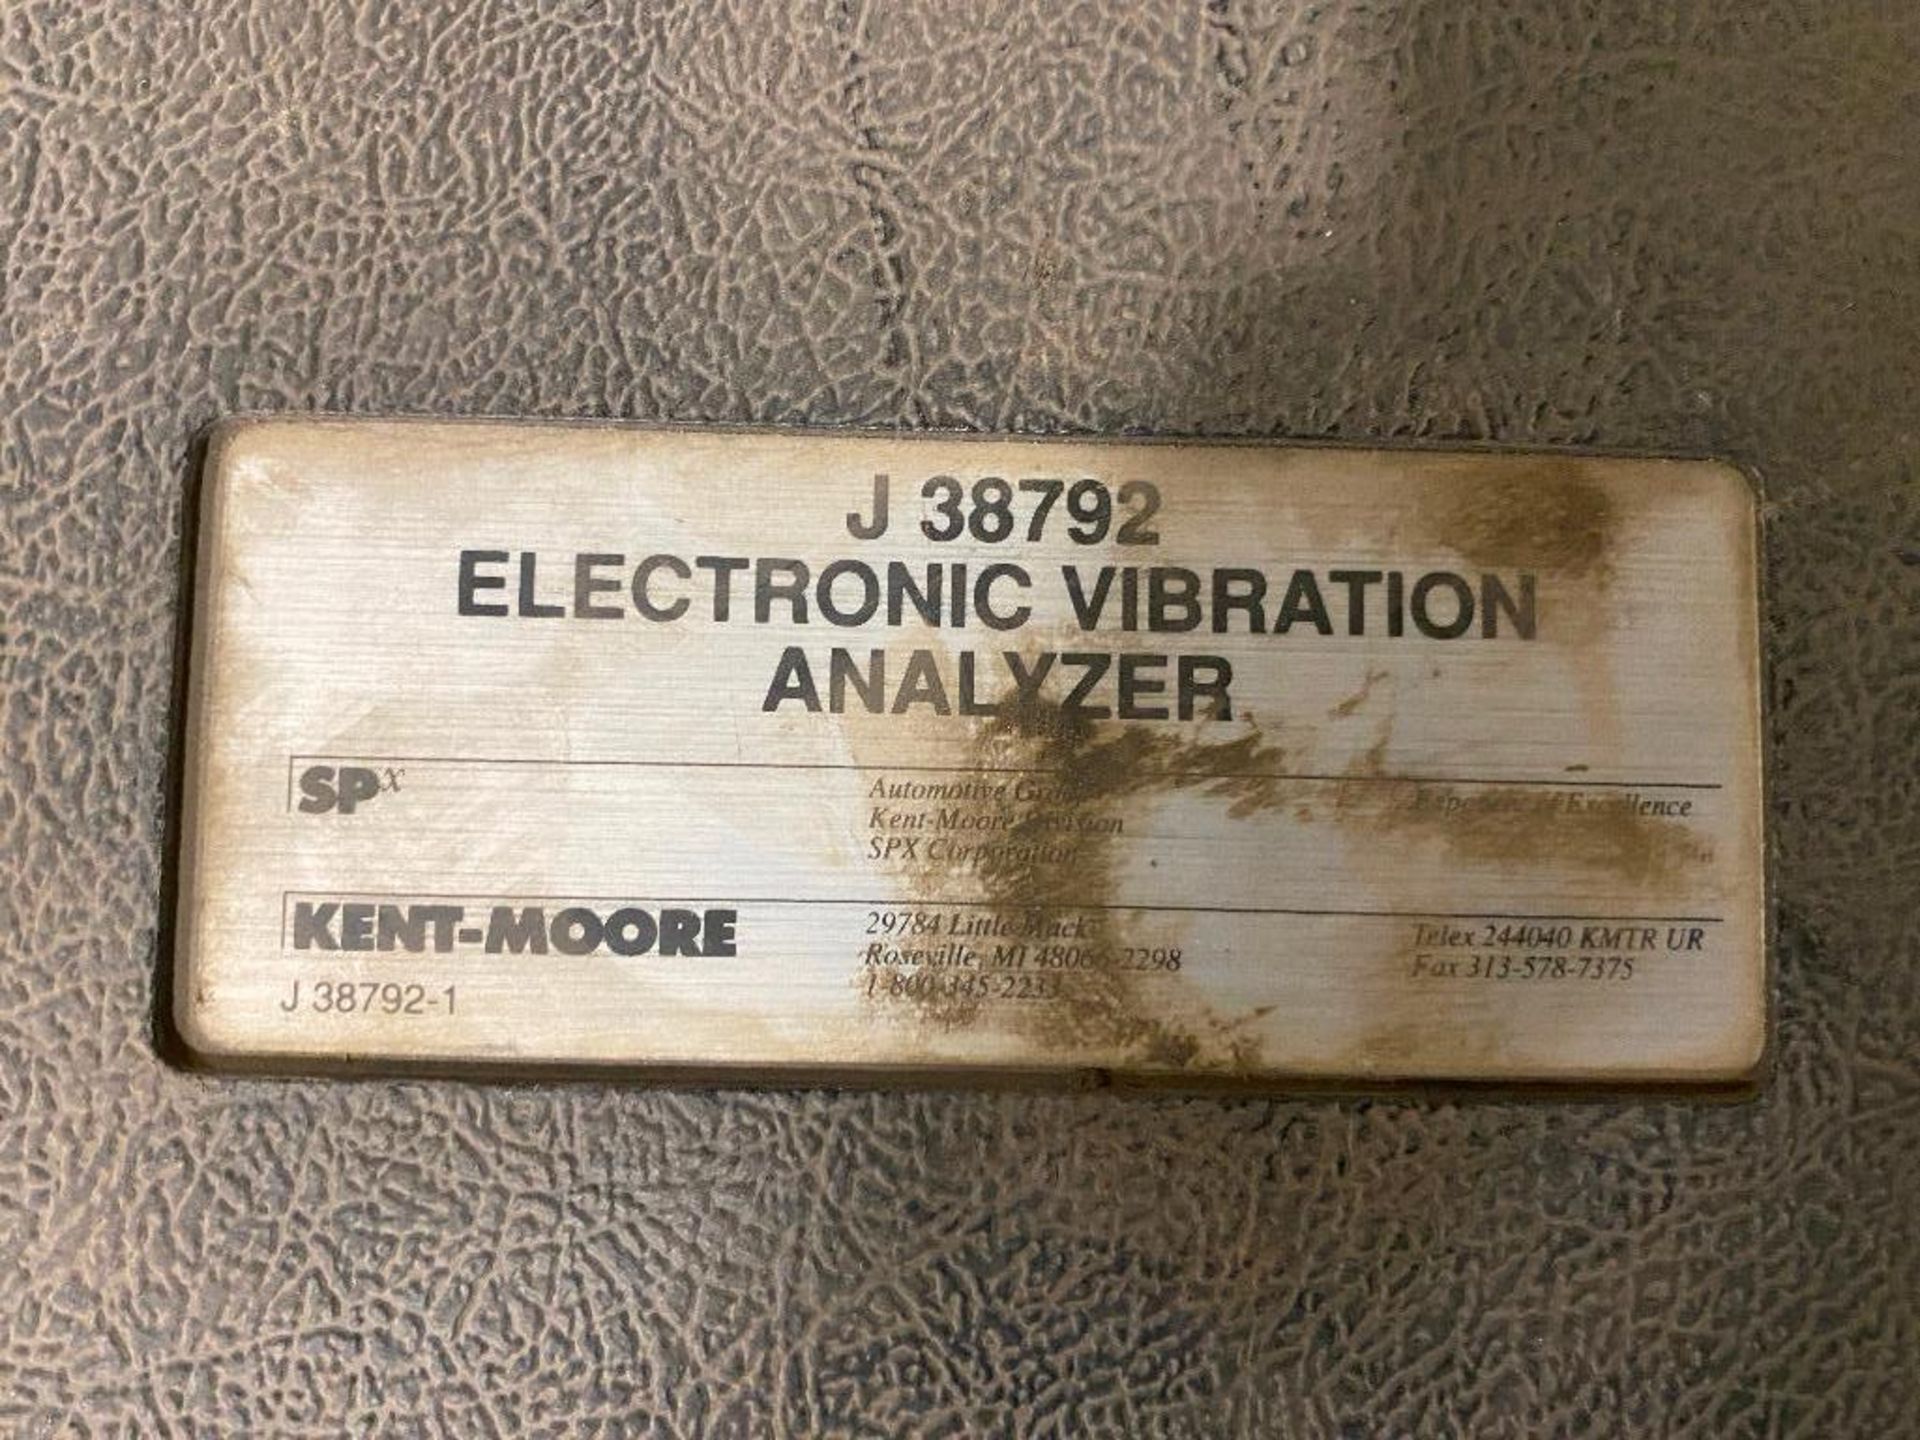 Kent Moore Electronic Vibration Analyzer, J 38792 - Image 2 of 2